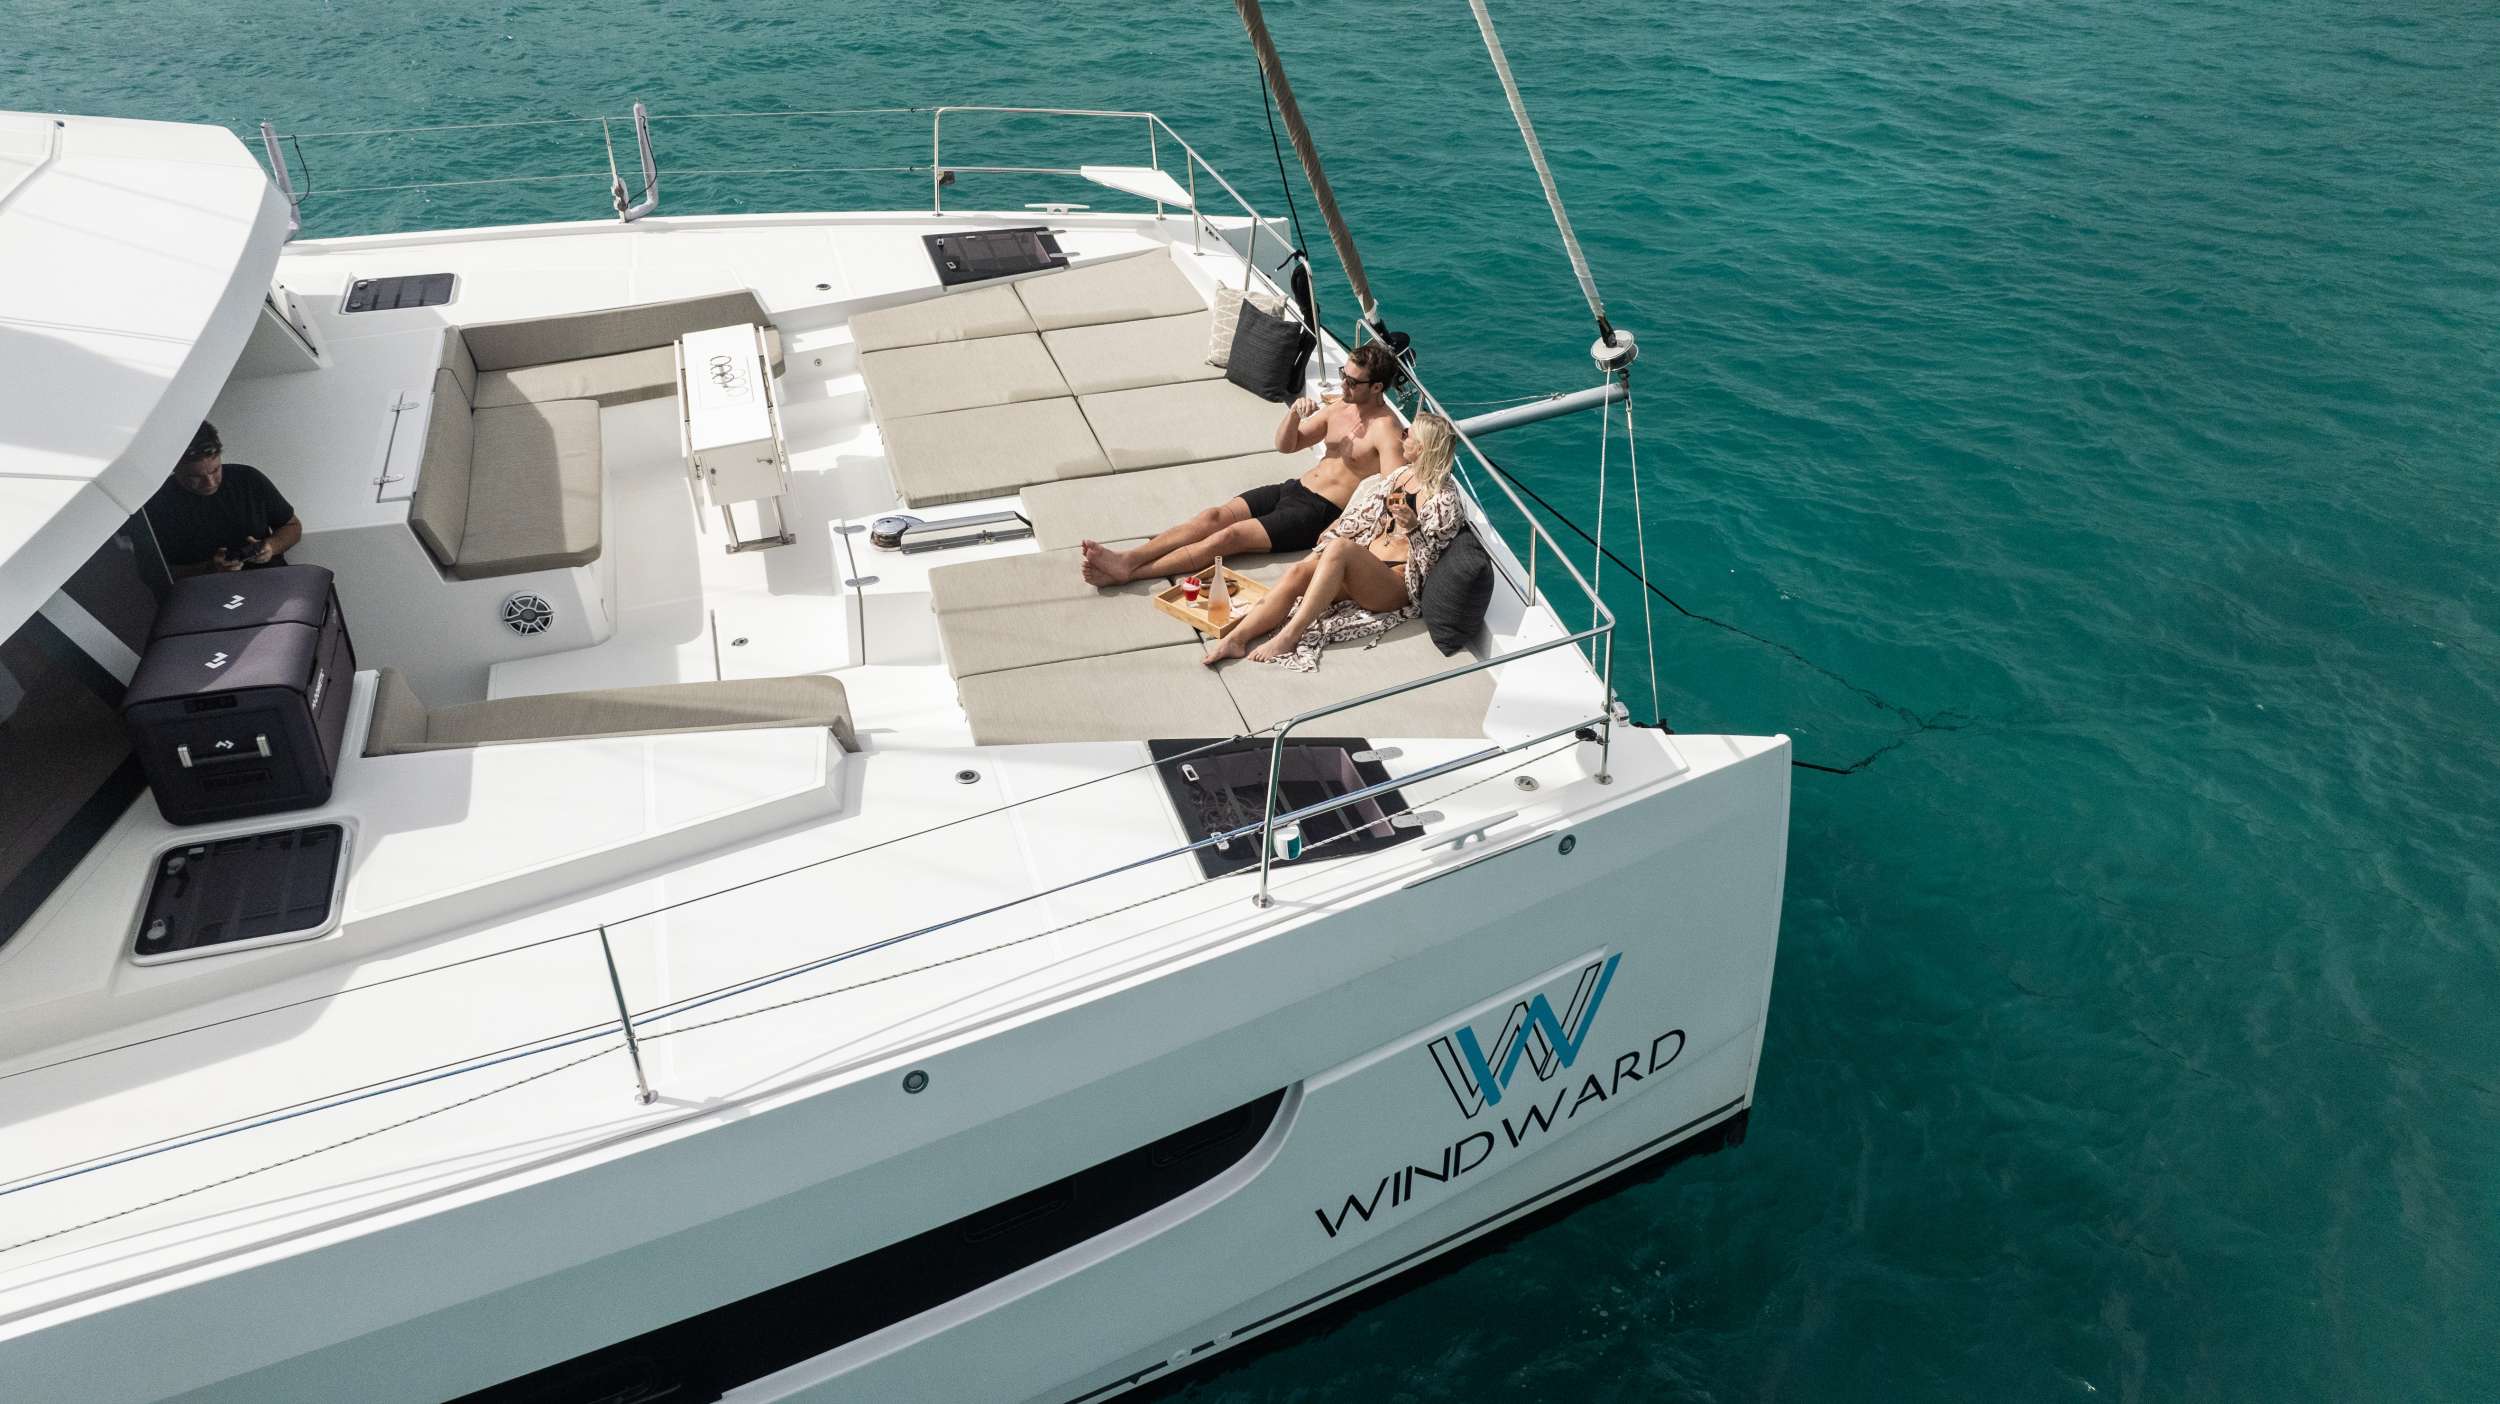 WINDWARD Yacht Charter - SISTER SHIP